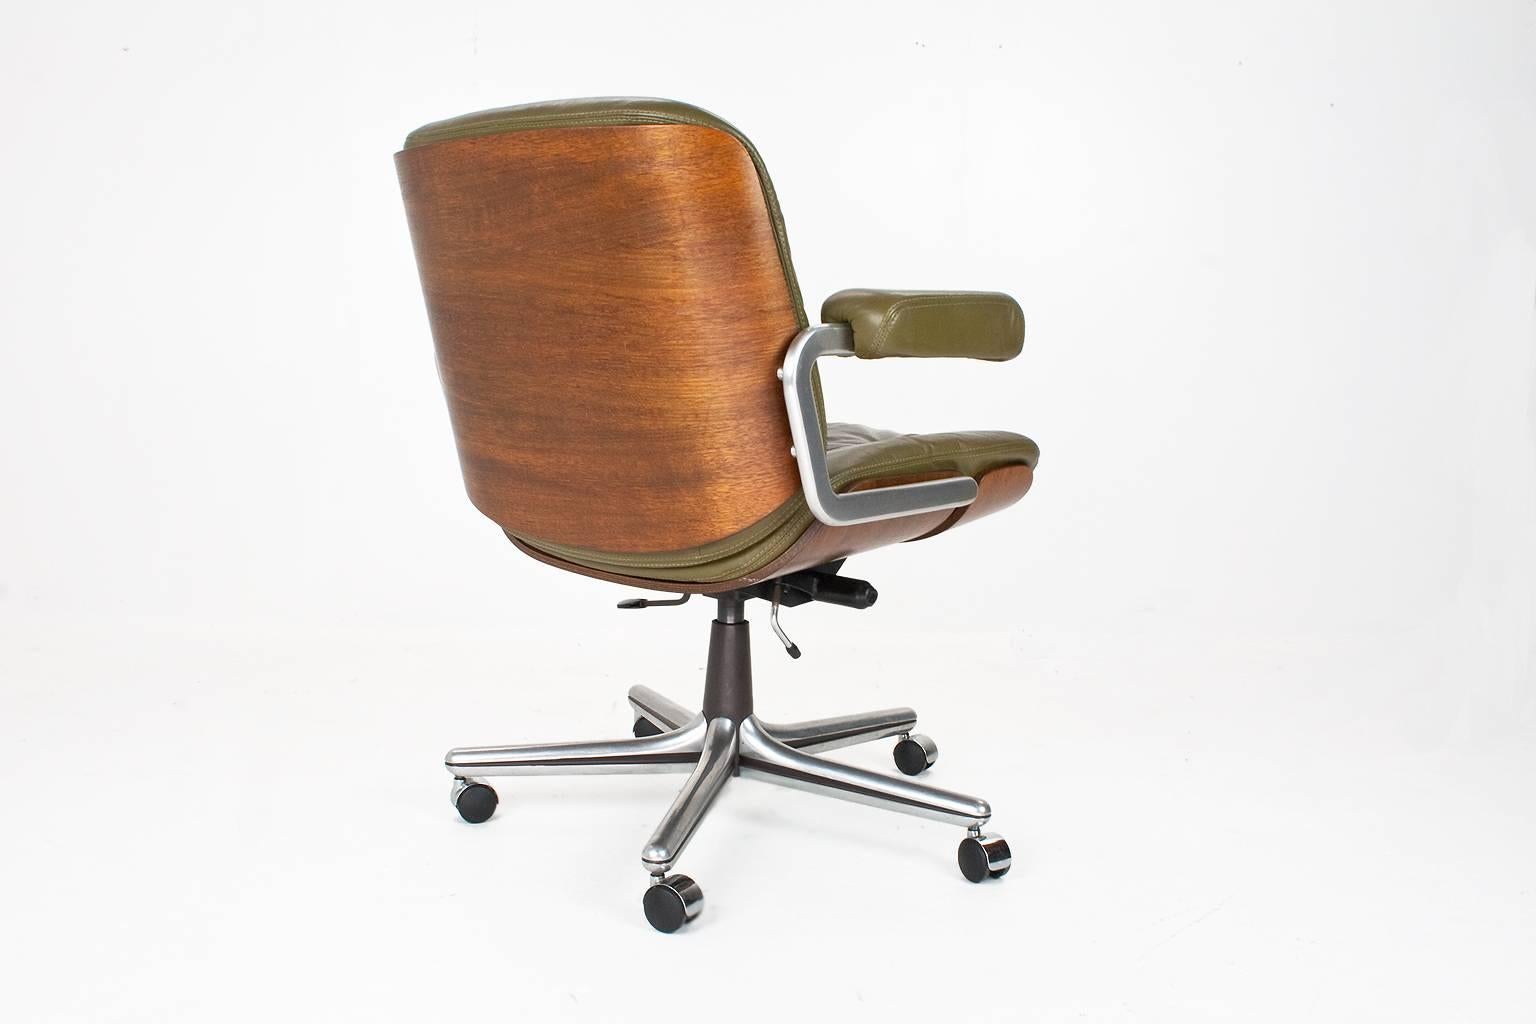 Dieser seltene Schweizer Vintage-Schreibtischstuhl wurde in den 1960er Jahren von Martin Stoll entworfen und von Giroflex in der Schweiz hergestellt. Der Fuß dieses Stuhls ist aus poliertem Aluminium mit einer Schale aus gebogenem Sperrholz in